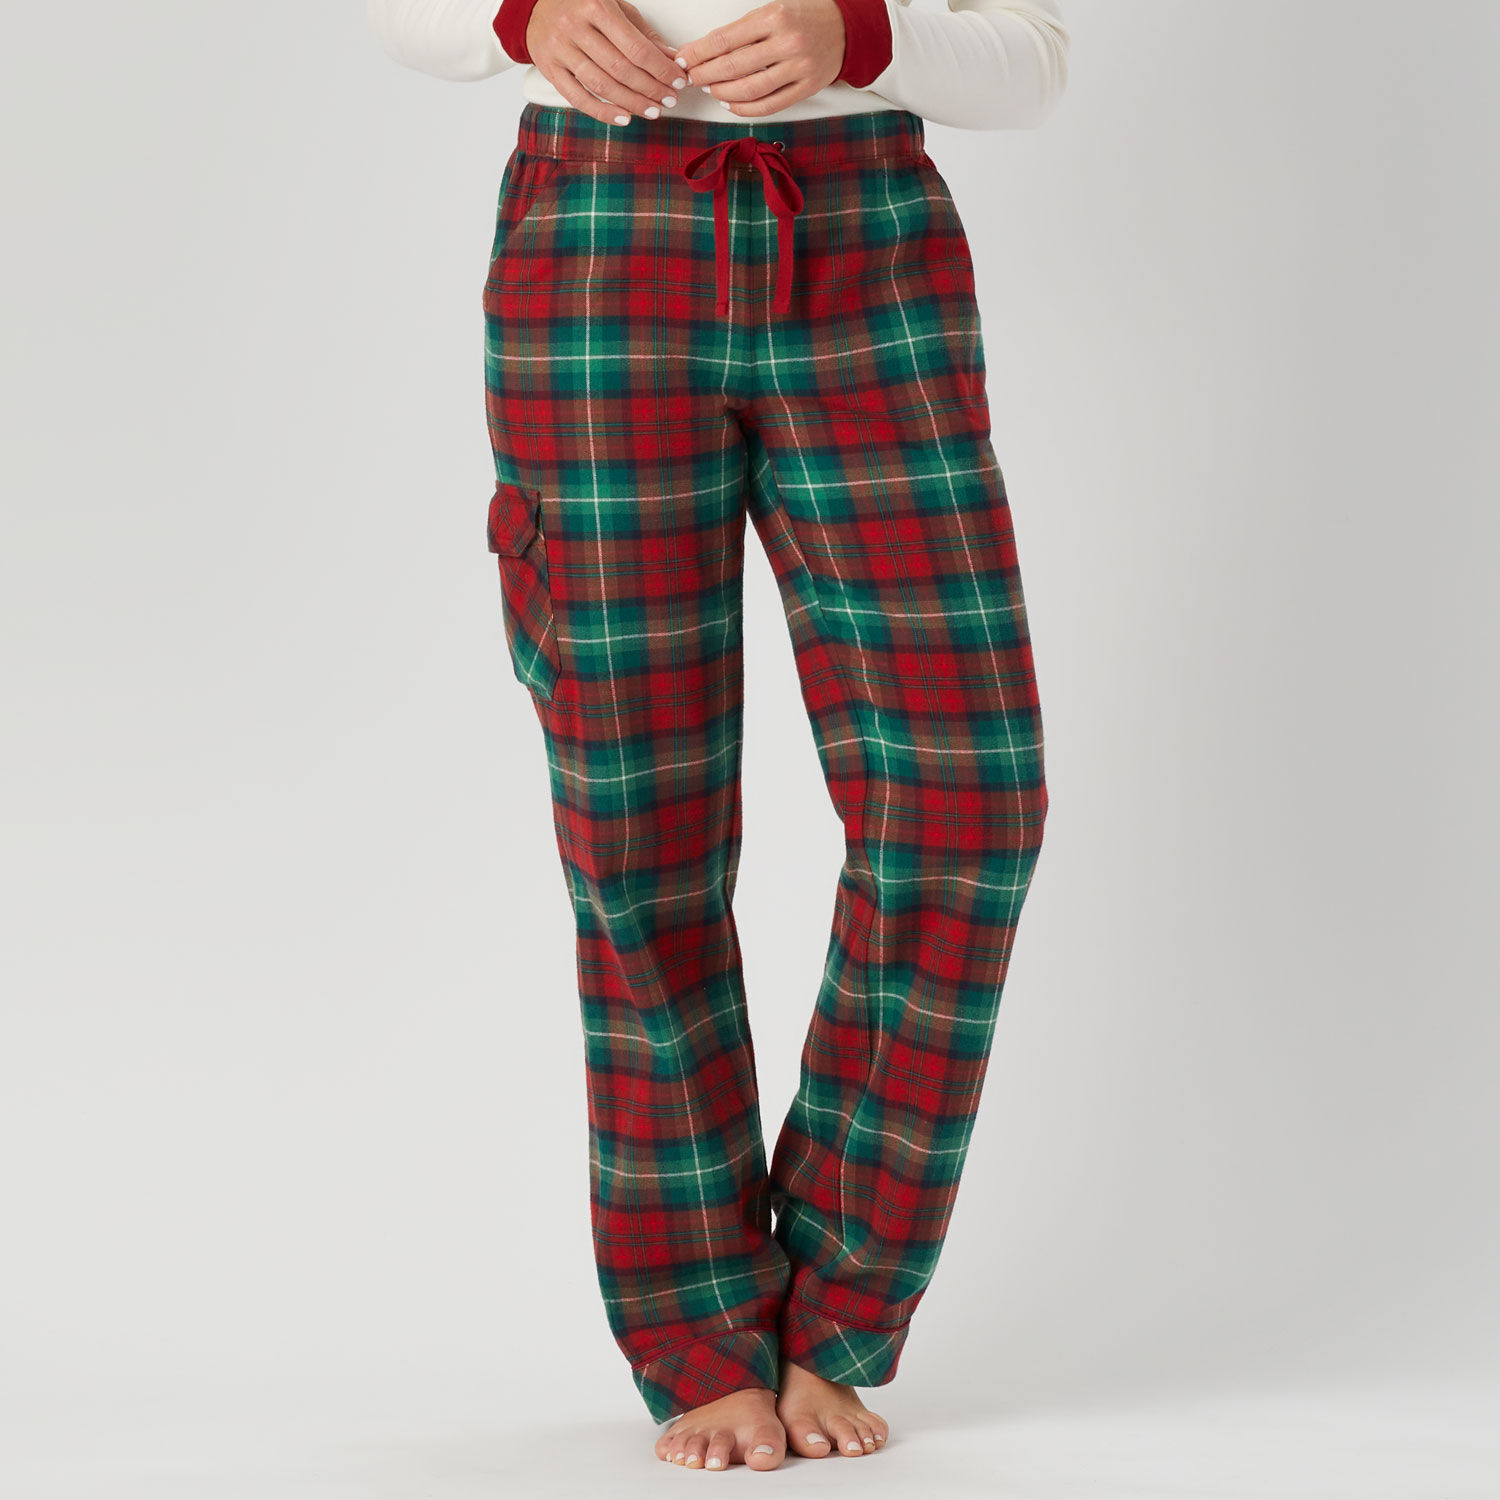 Buy SHHLOK Women's Cotton Free Size Pyjama Pants | Regular Fit Lower Pajama  Lounge Pants Printed Night Wear Blue 1 Pack at Amazon.in